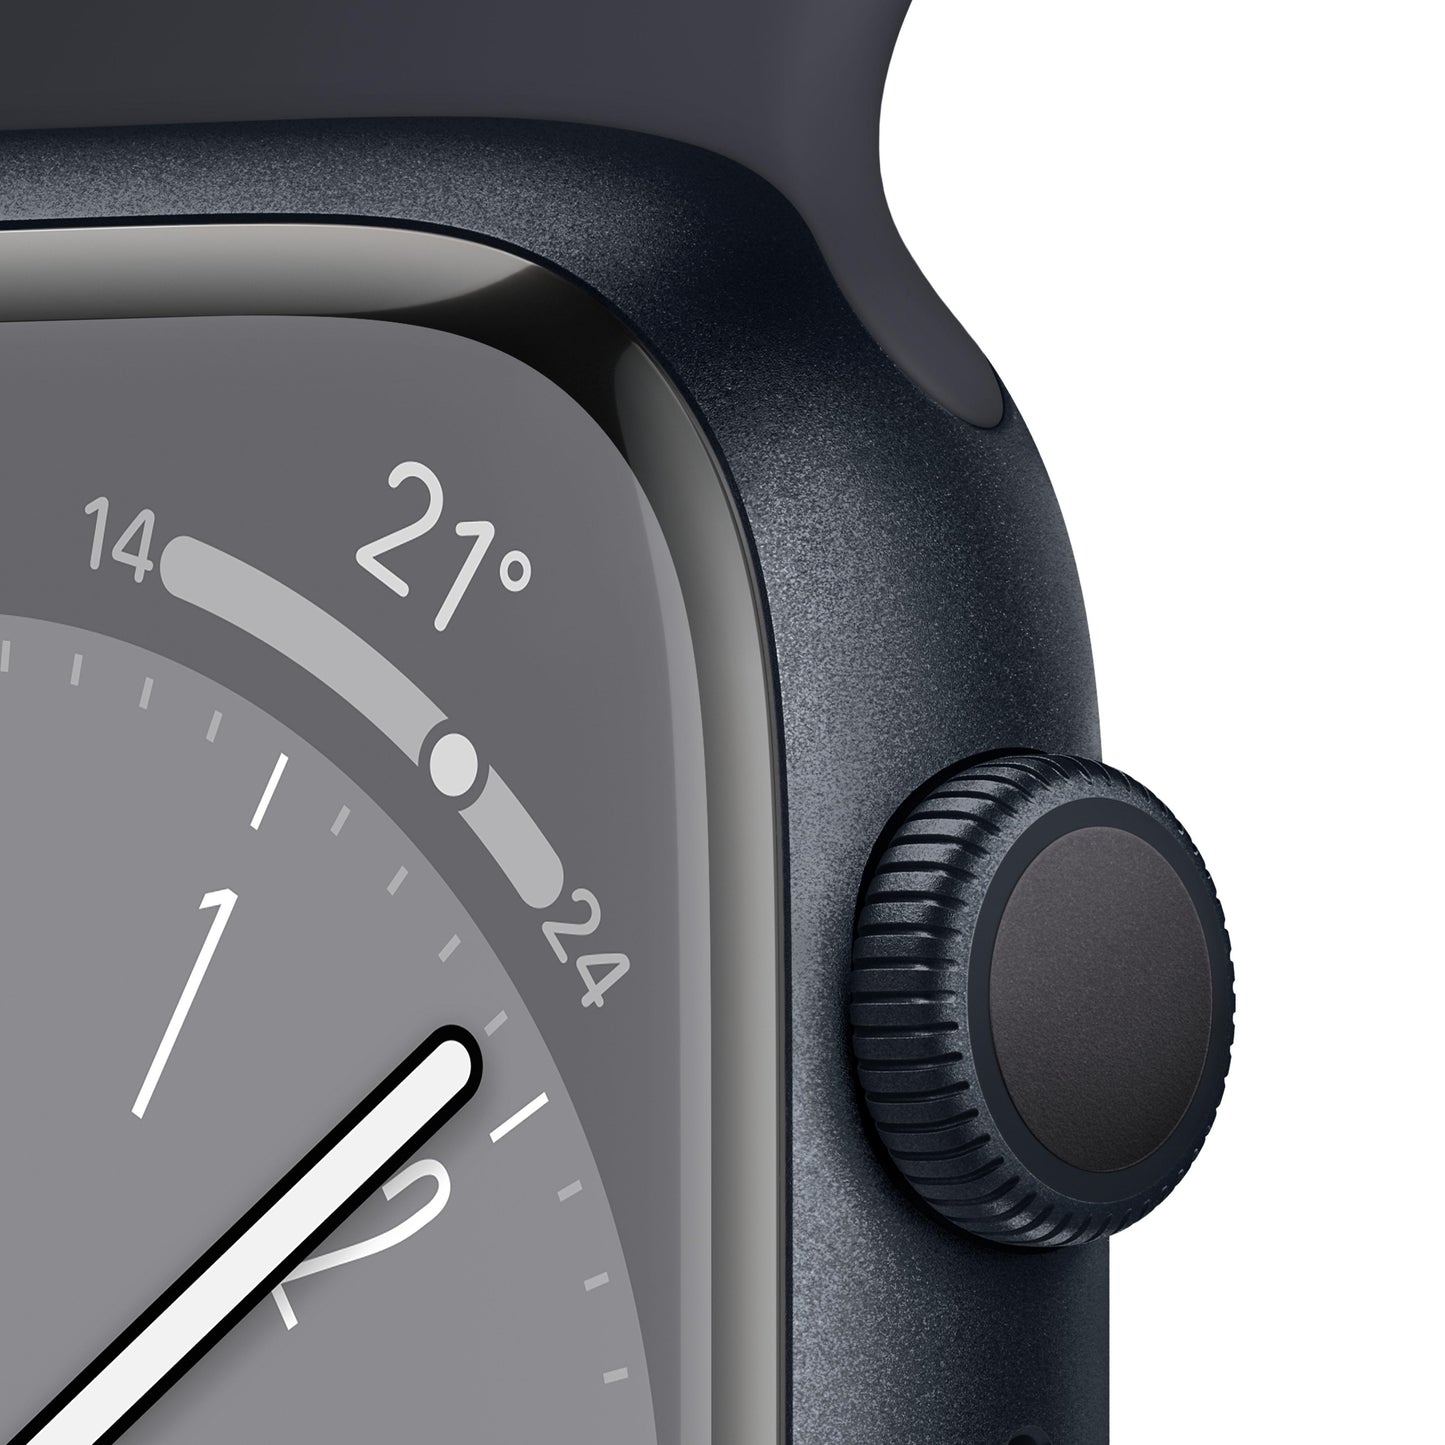 Apple Watch Series 8 (GPS) - Caja de aluminio en color medianoche de 41 mm - Correa deportiva en color medianoche - Talla única